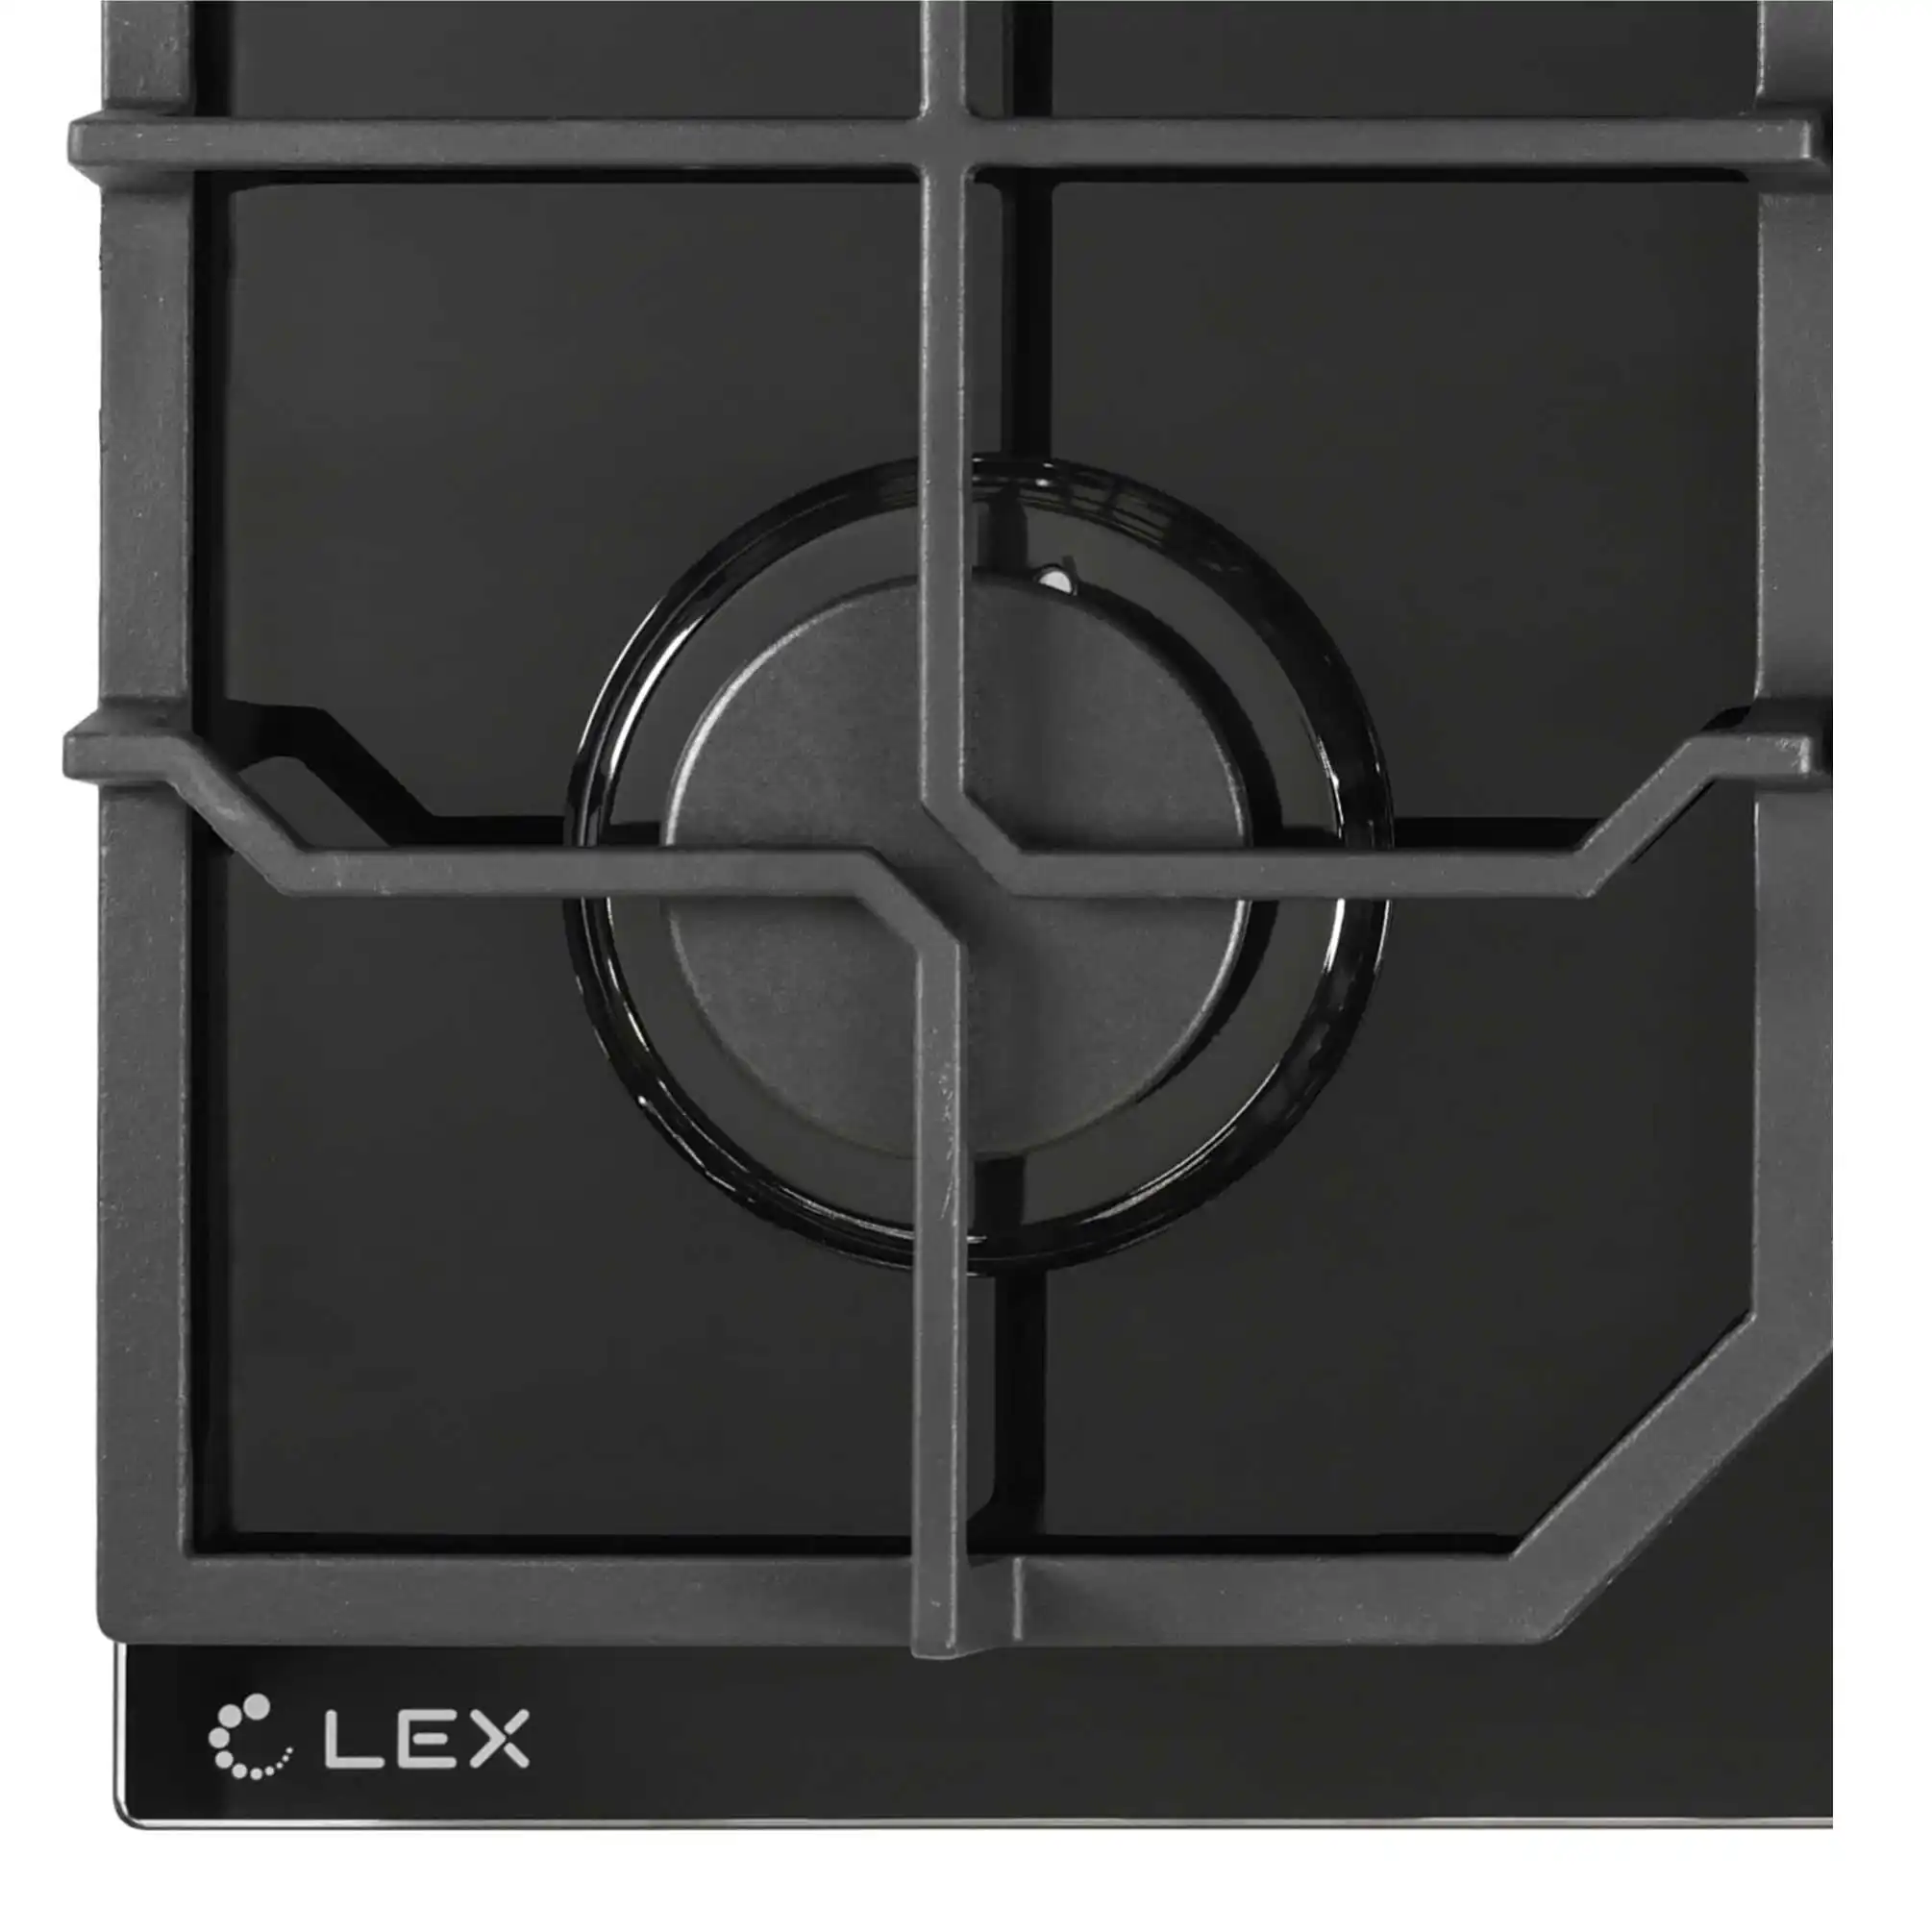 LEX GVG 642 BL газовая панель